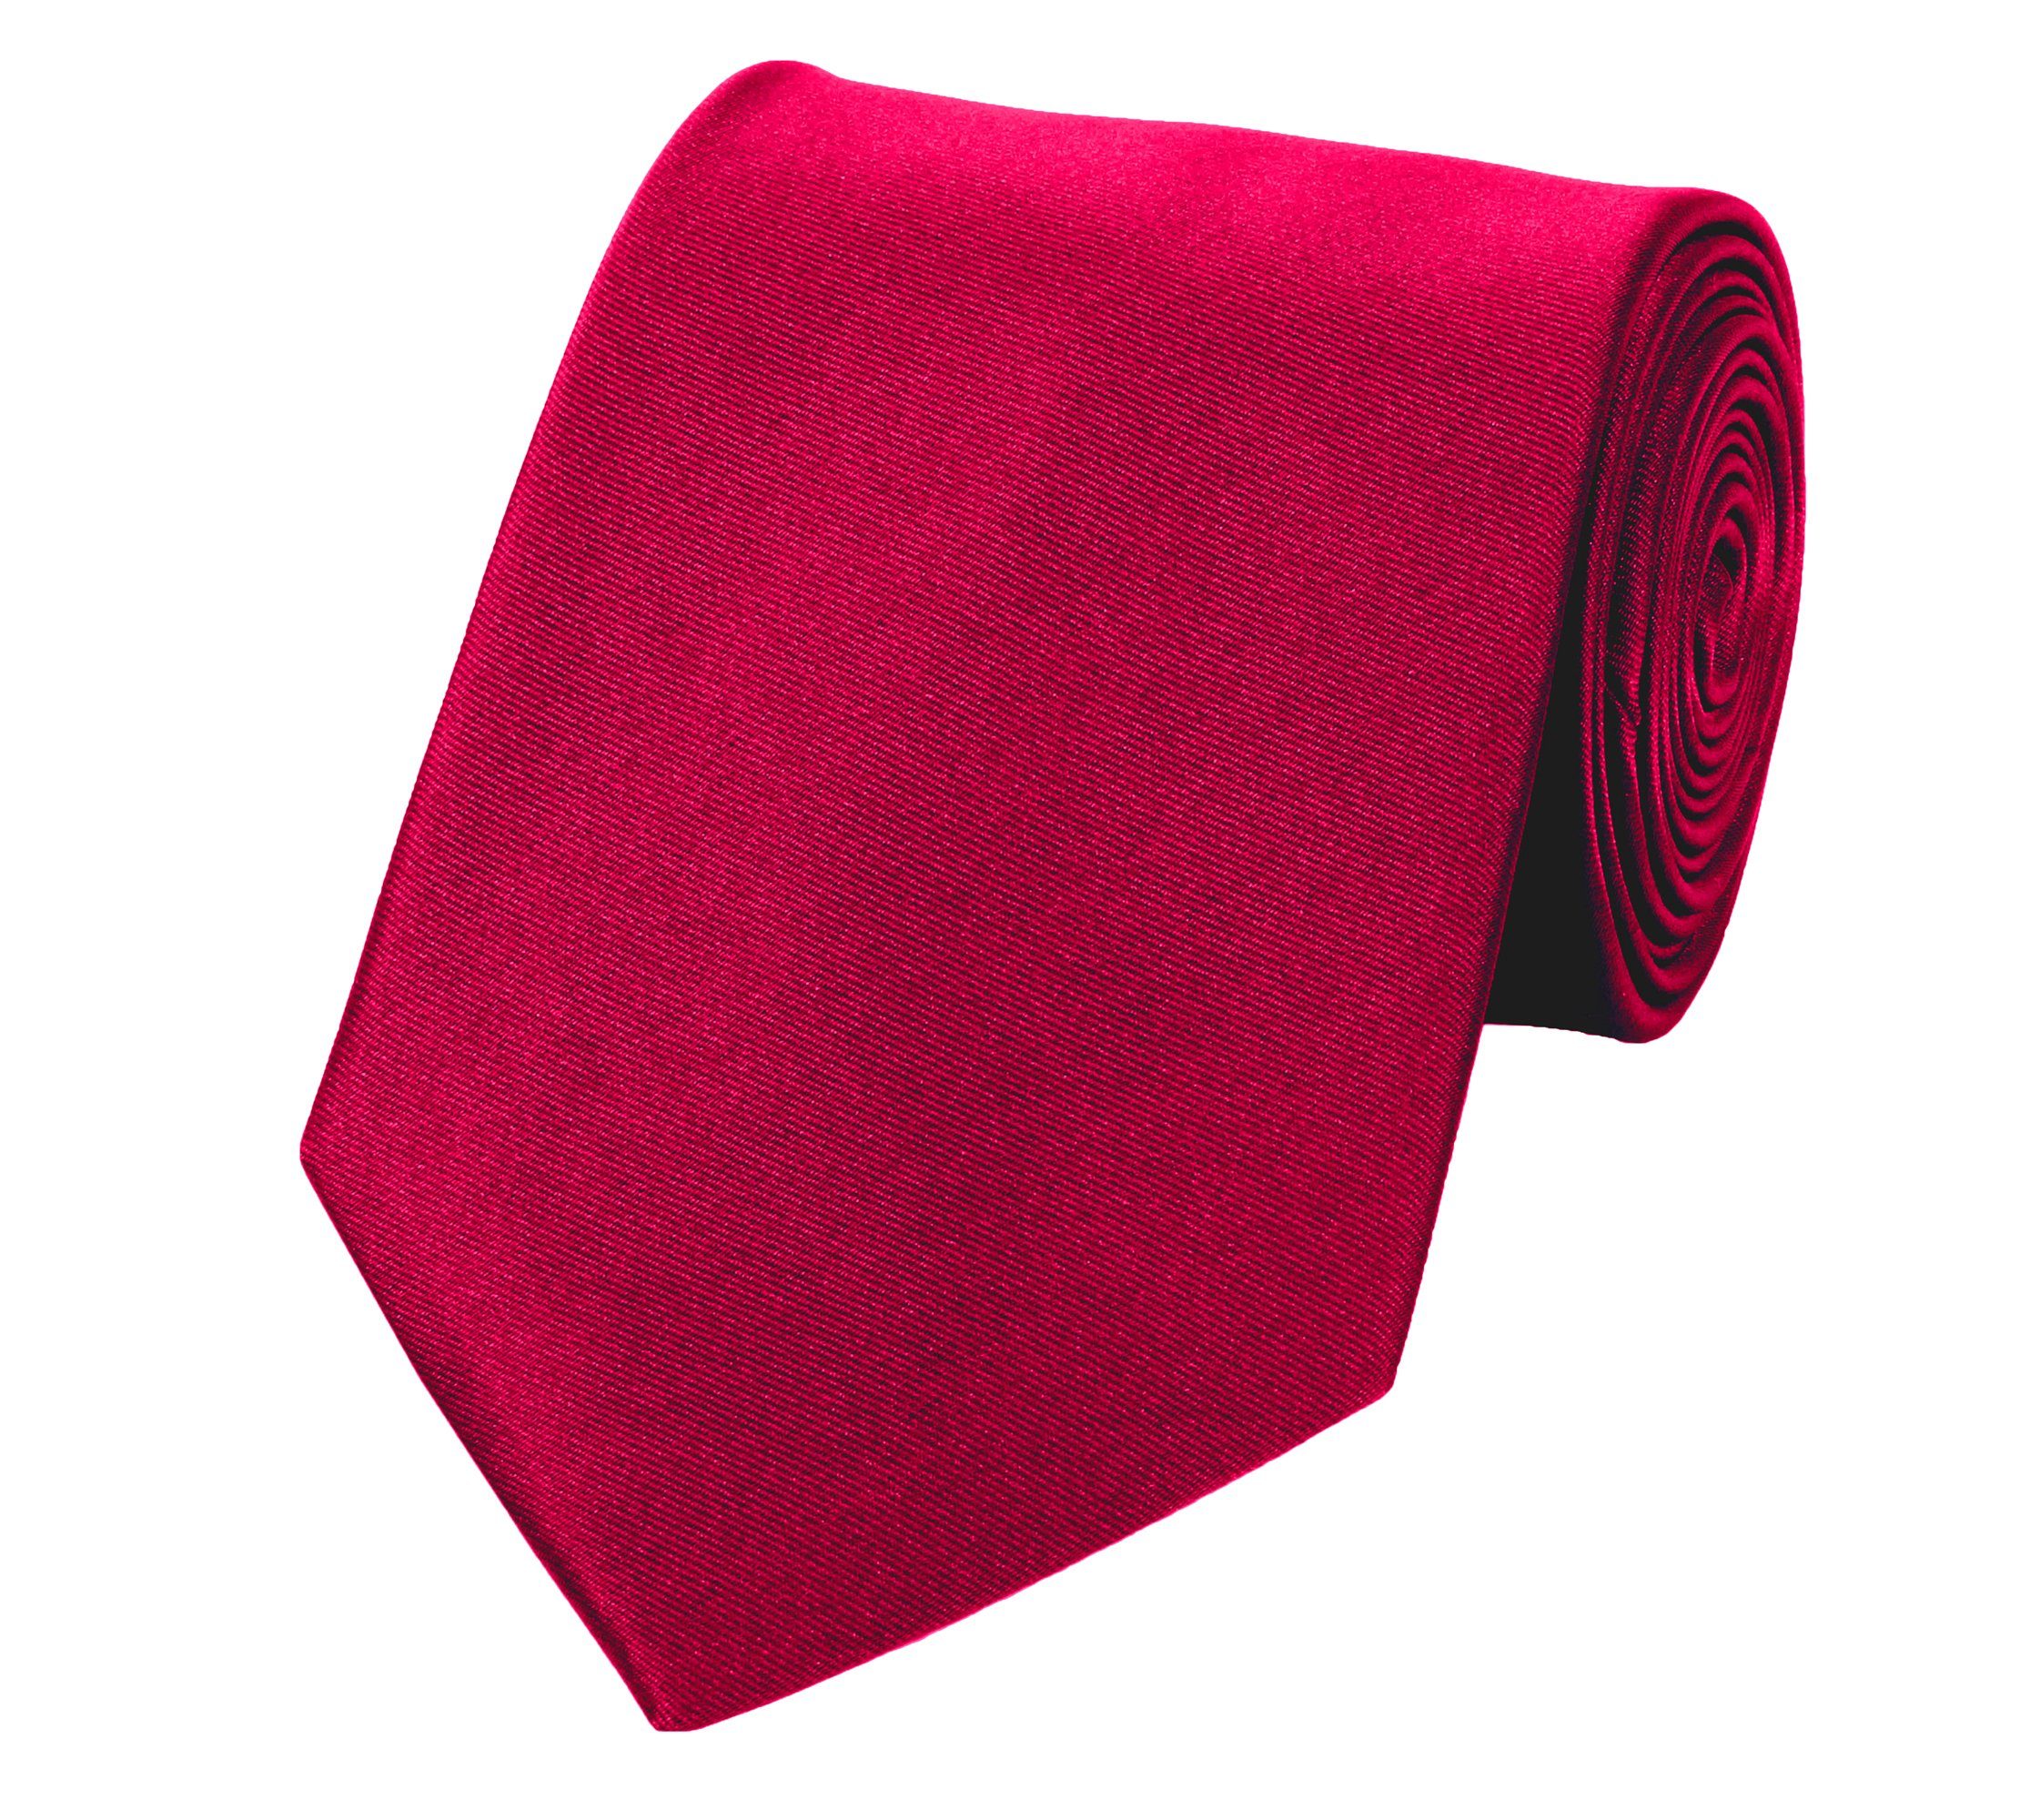 Fabio Farini Krawatte Herren Krawatte Rot - verschiedene Rote Männer Schlips in 8cm (ohne Box, Unifarben) Breit (8cm), Rot - Black Cherry